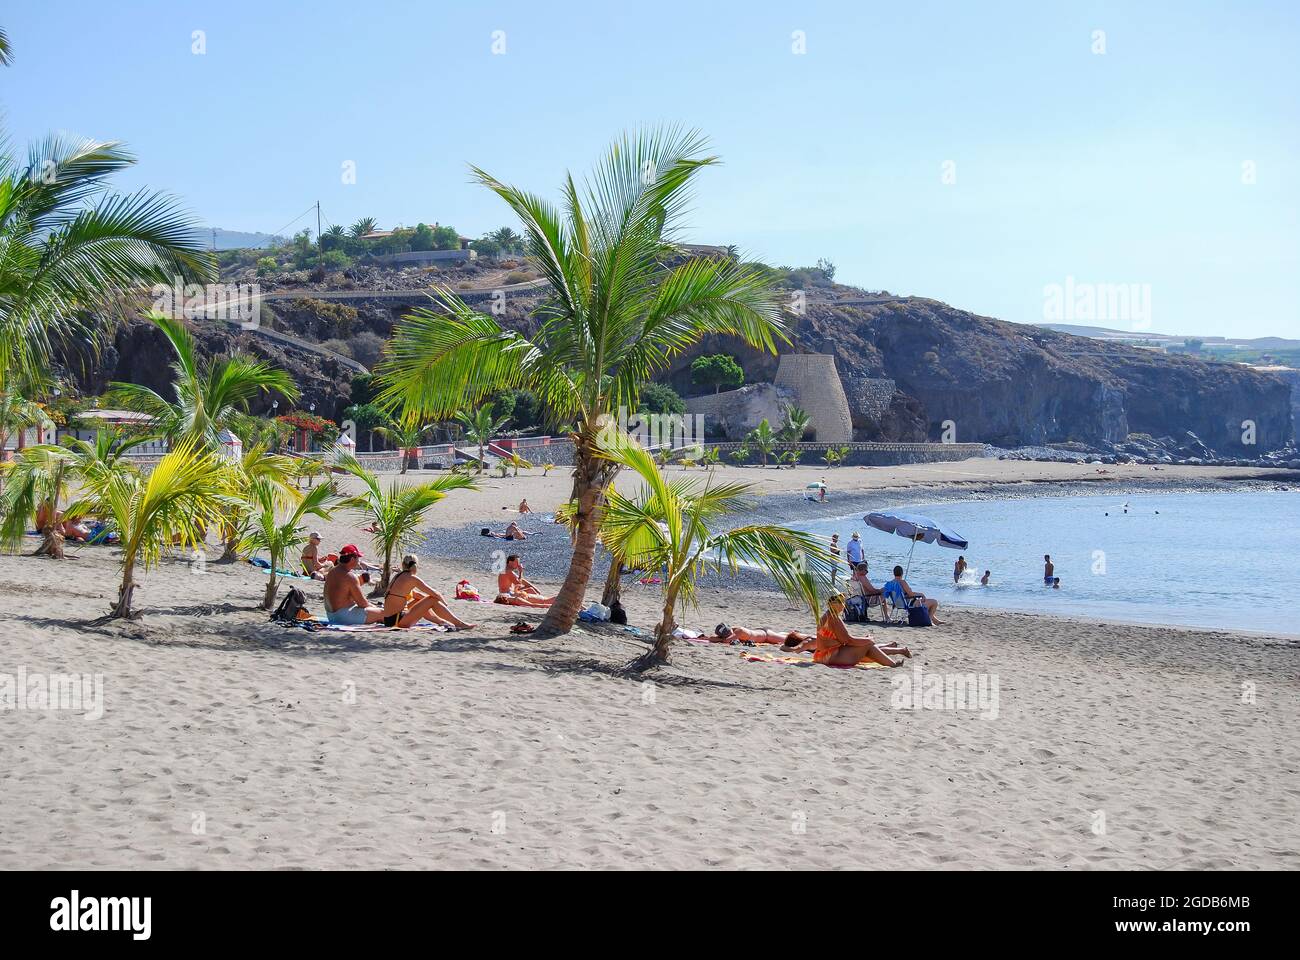 Vista a la playa, playa de San Juan, Tenerife, Islas Canarias, España Foto de stock